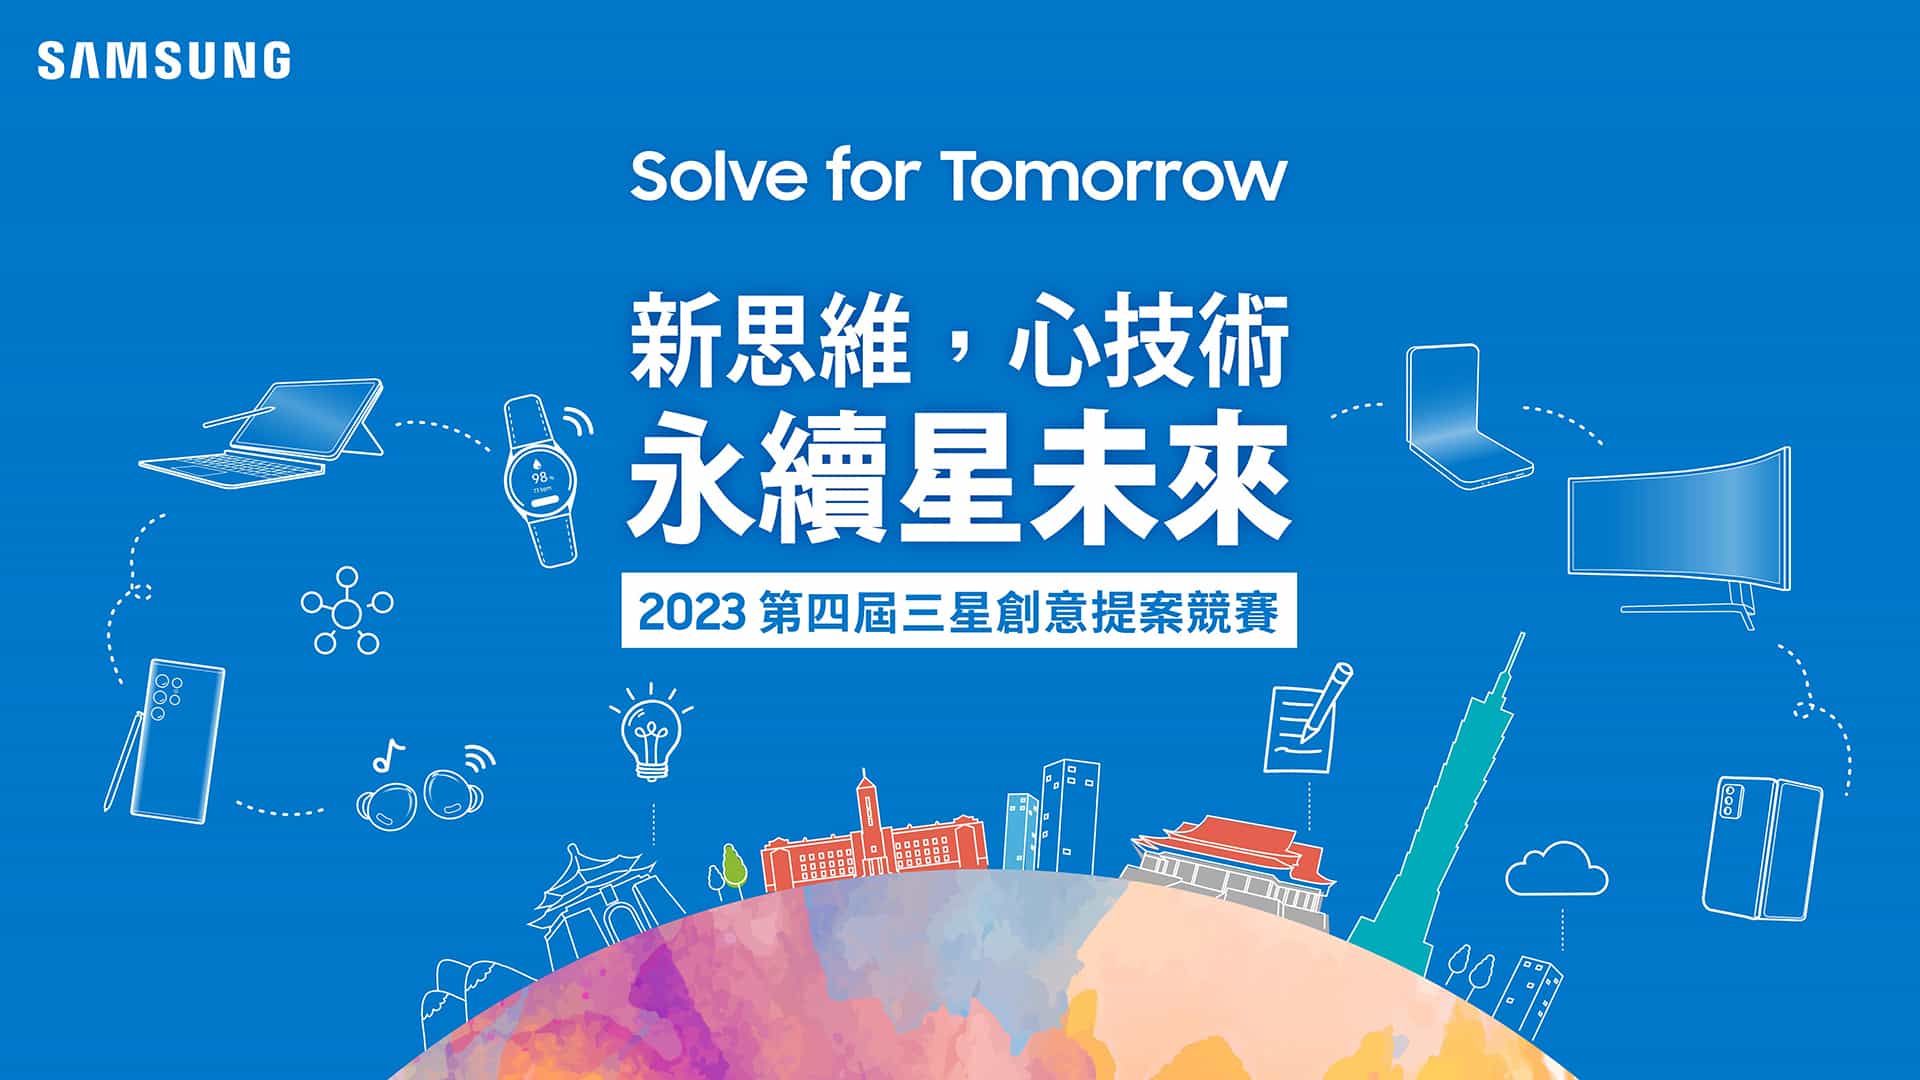 【新聞照片1】三星第四屆「solve For Tomorrow」競賽2月17日正式開跑